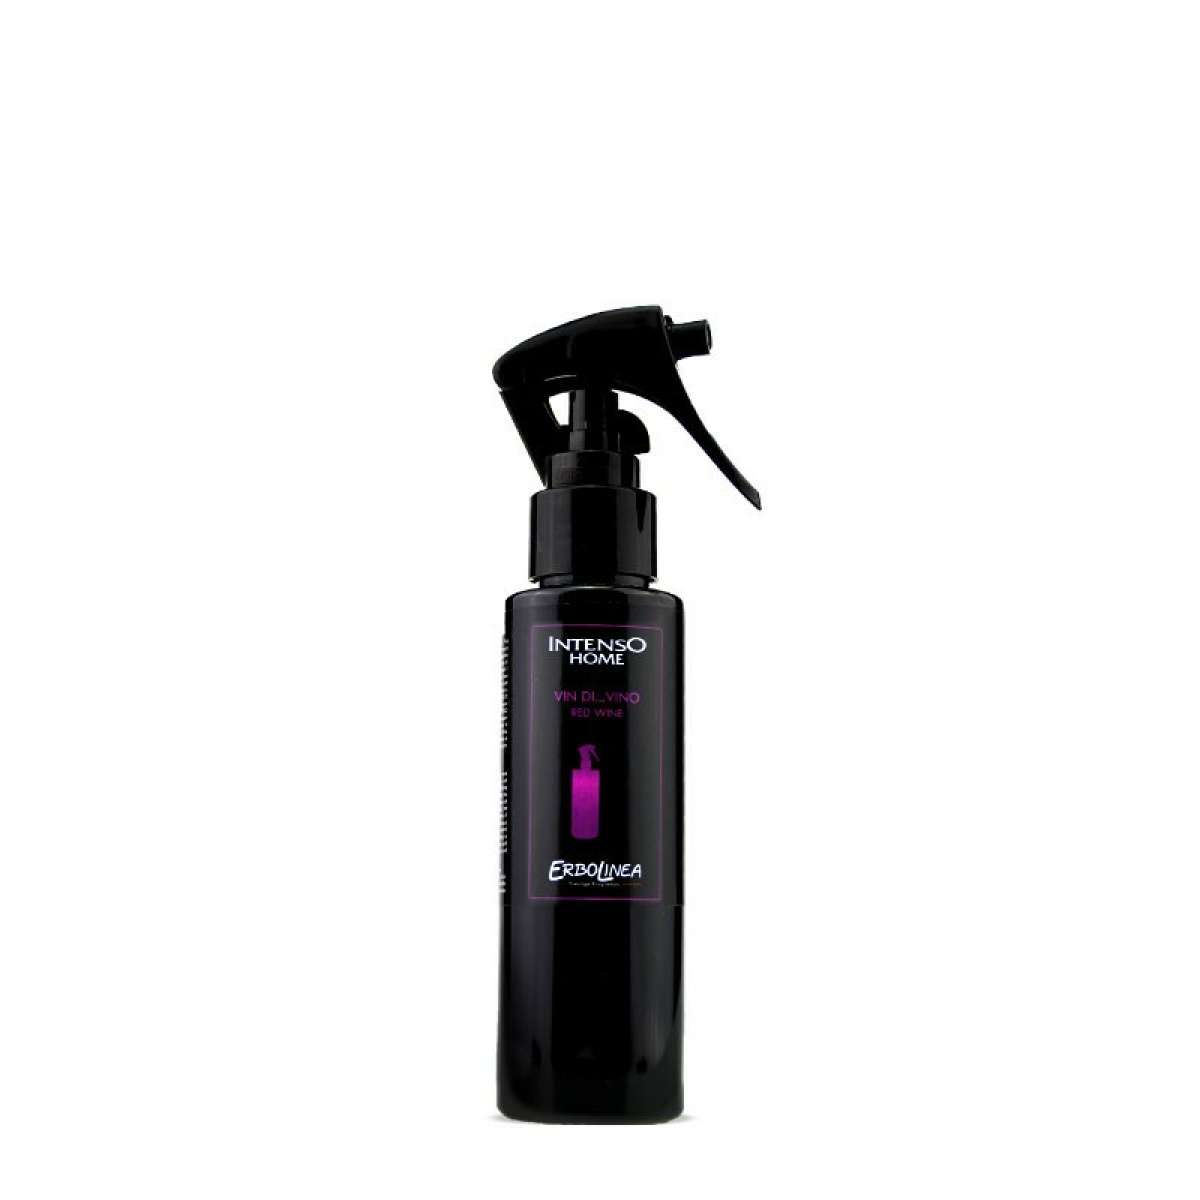 Immagine del prodotto Home Spray per Ambiente Vin...Divino 100 ml | Erbolinea